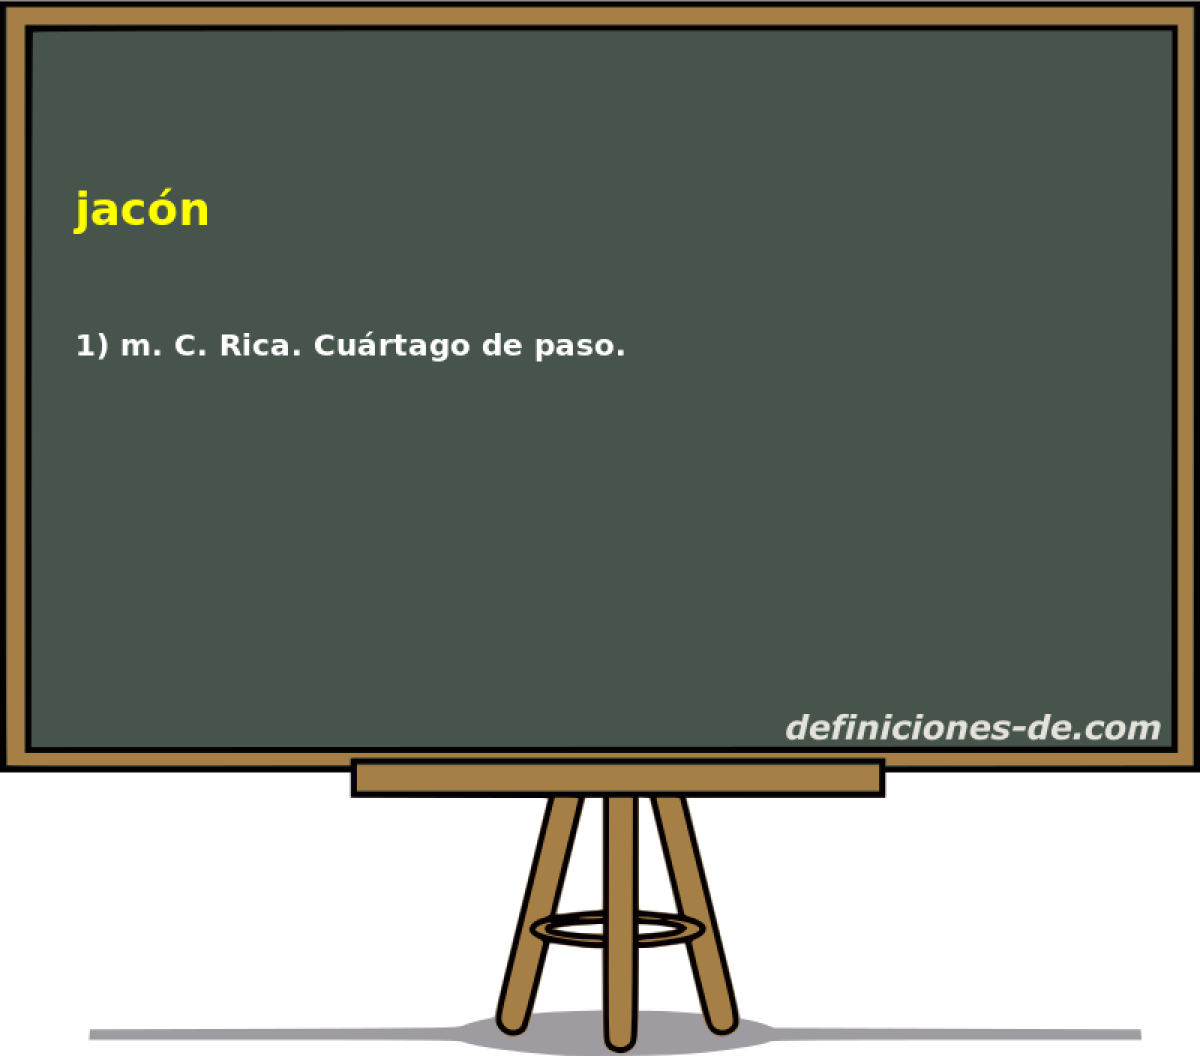 jacn 